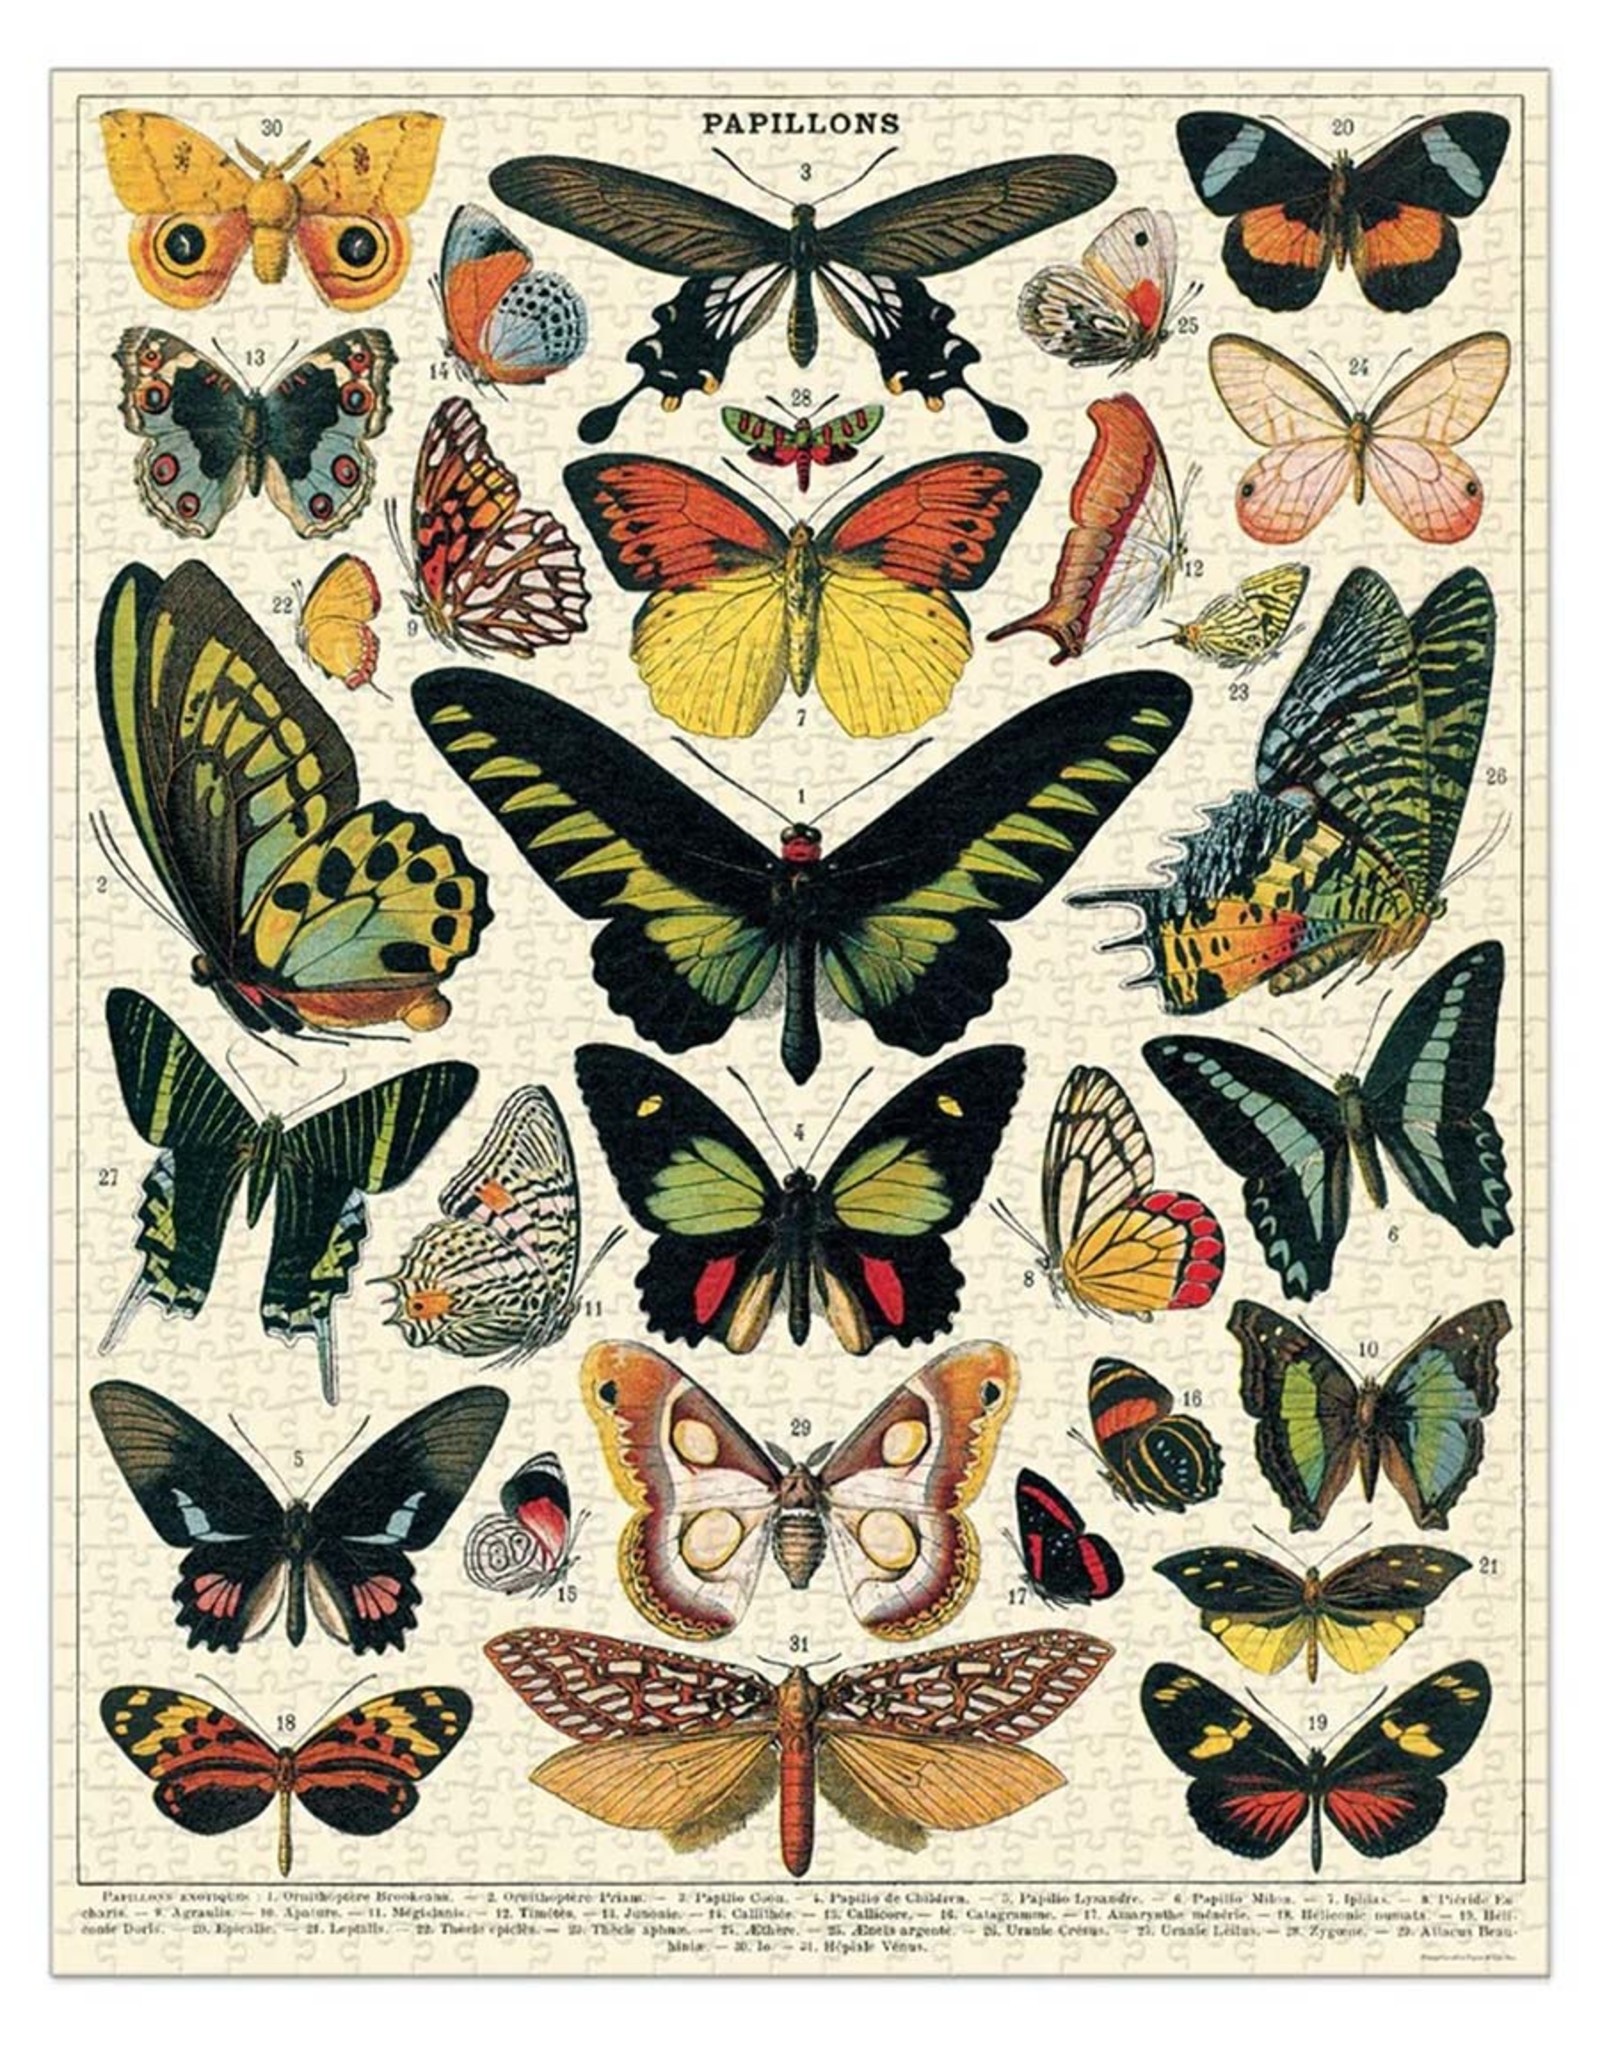 Butterflies Puzzle